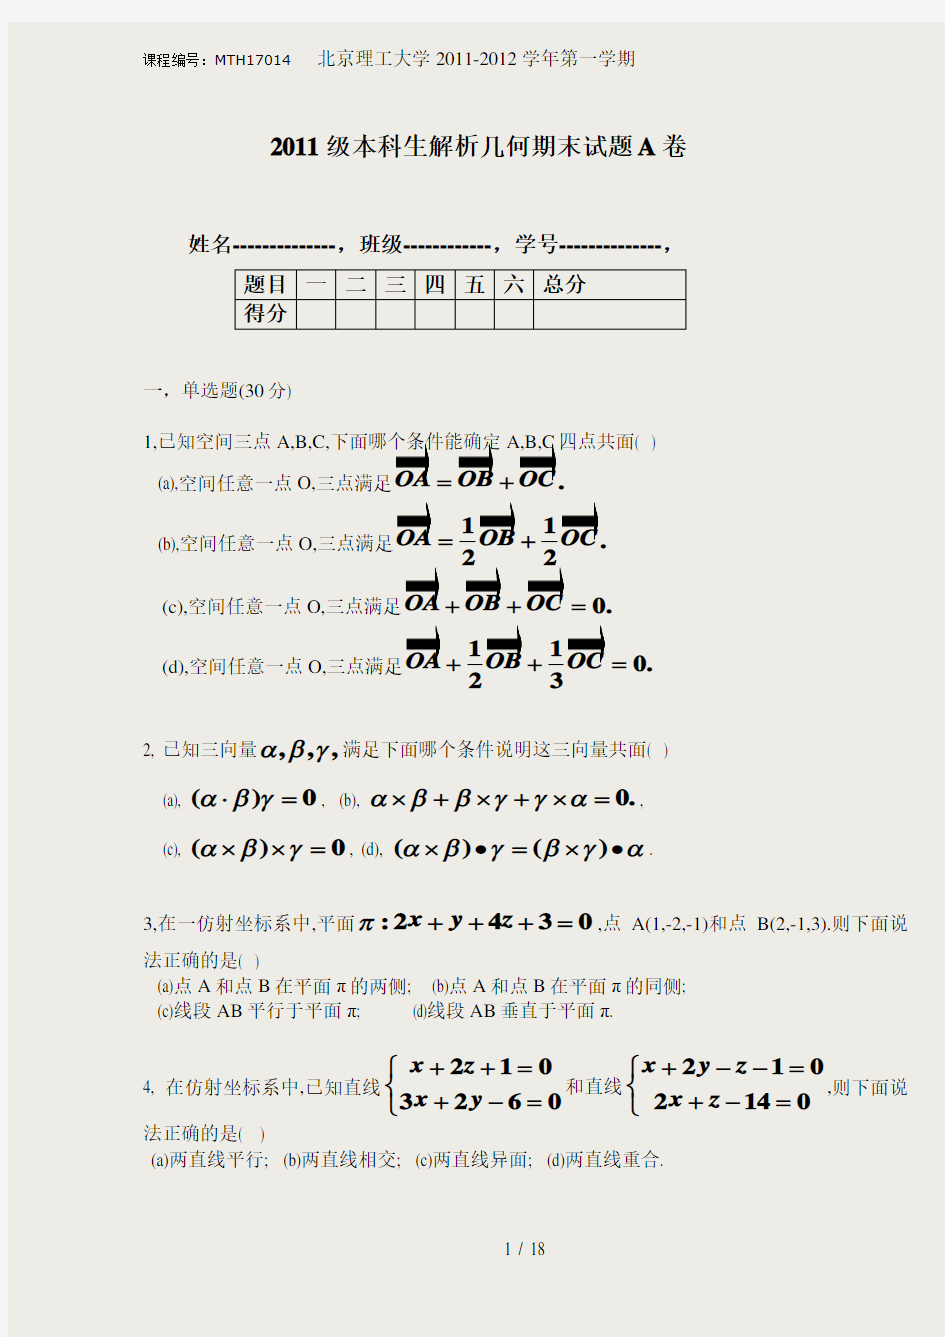 北京理工大学数学专业解析几何期末试题(MTH17014,H0171006)